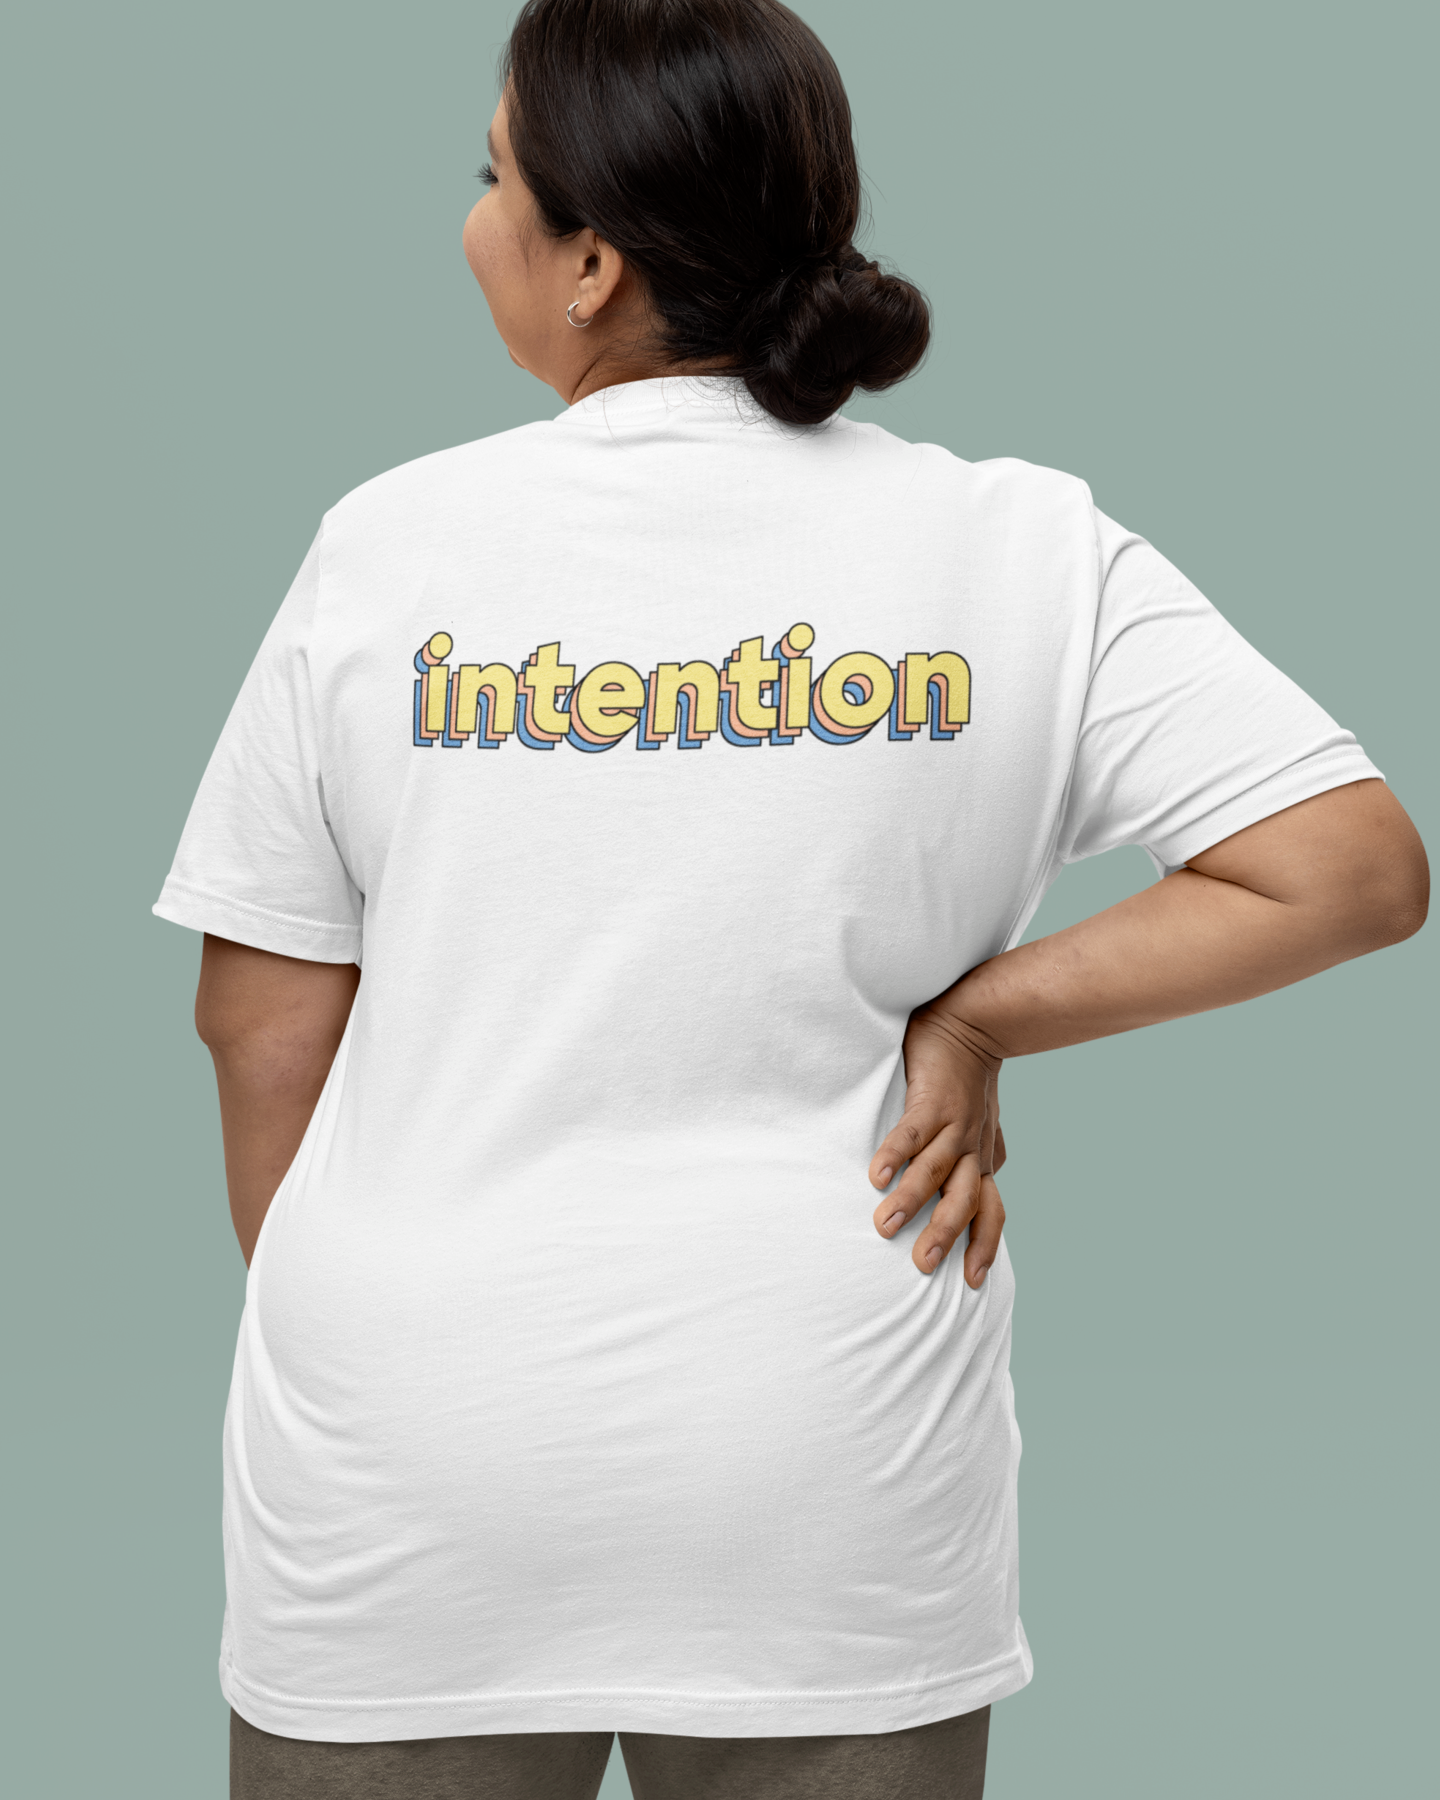 Women's "intention" T-shirt